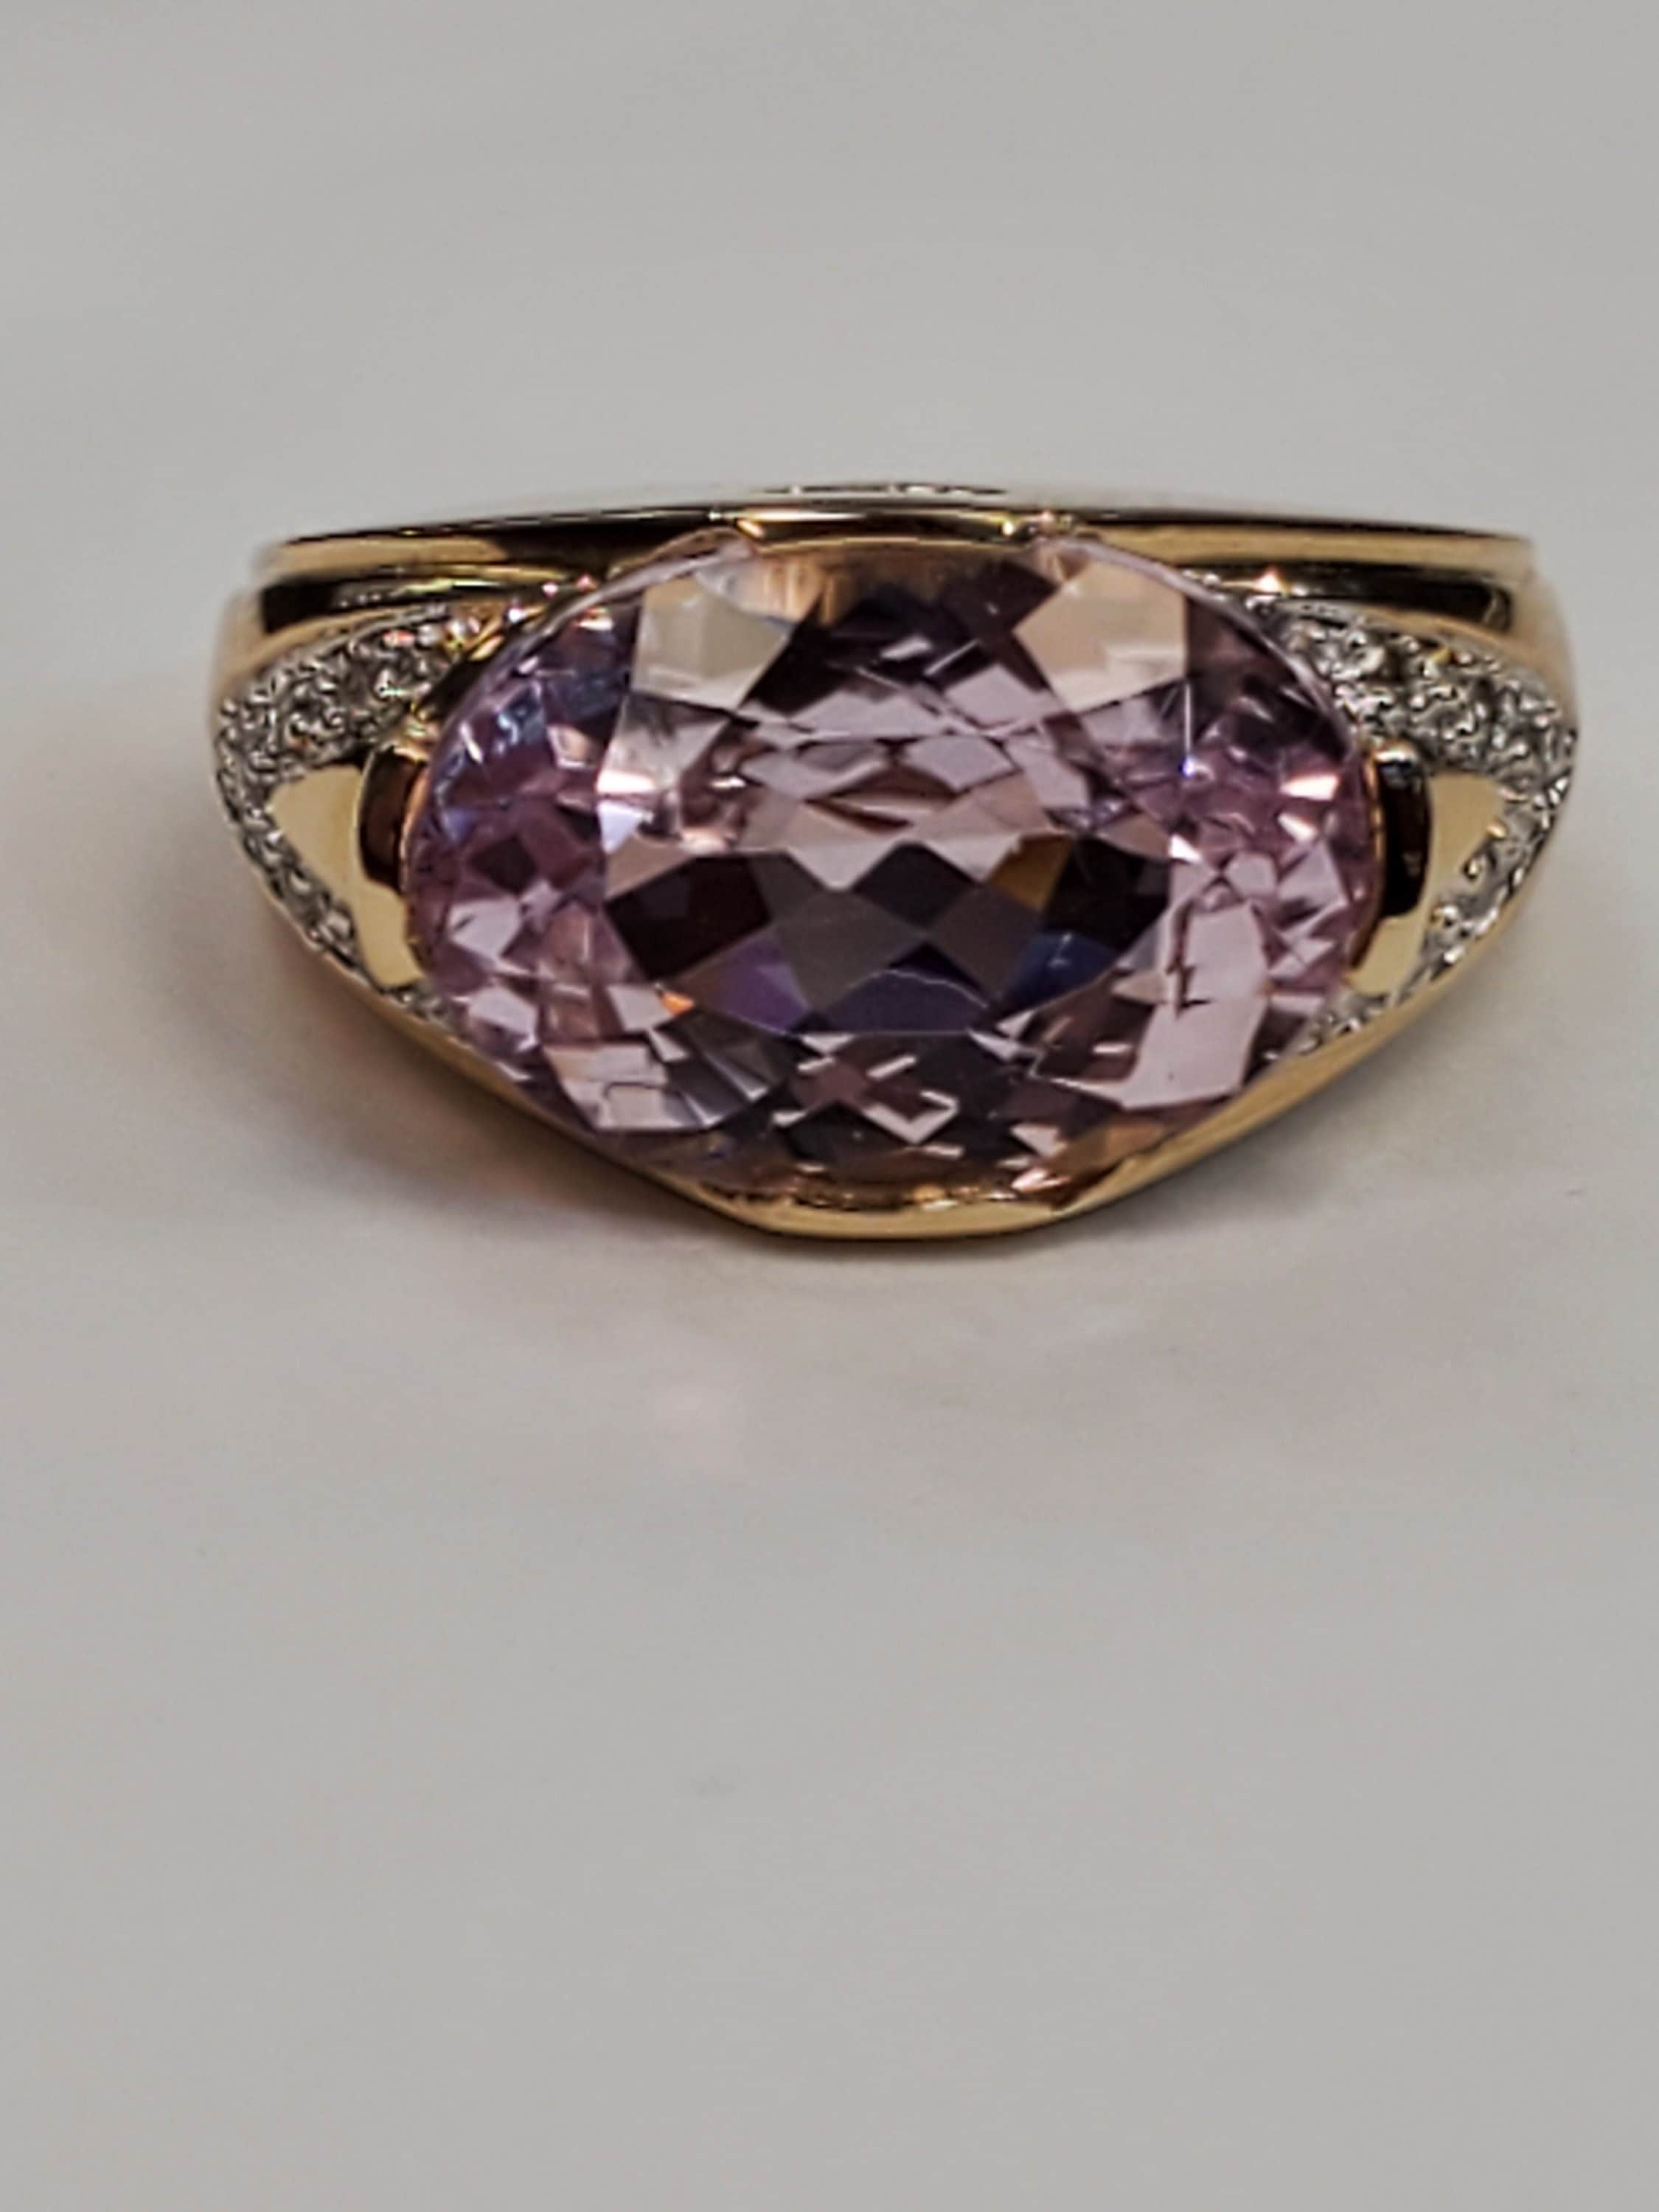 Oval Kunzite and diamond ring 14k yellow gold size 6.5